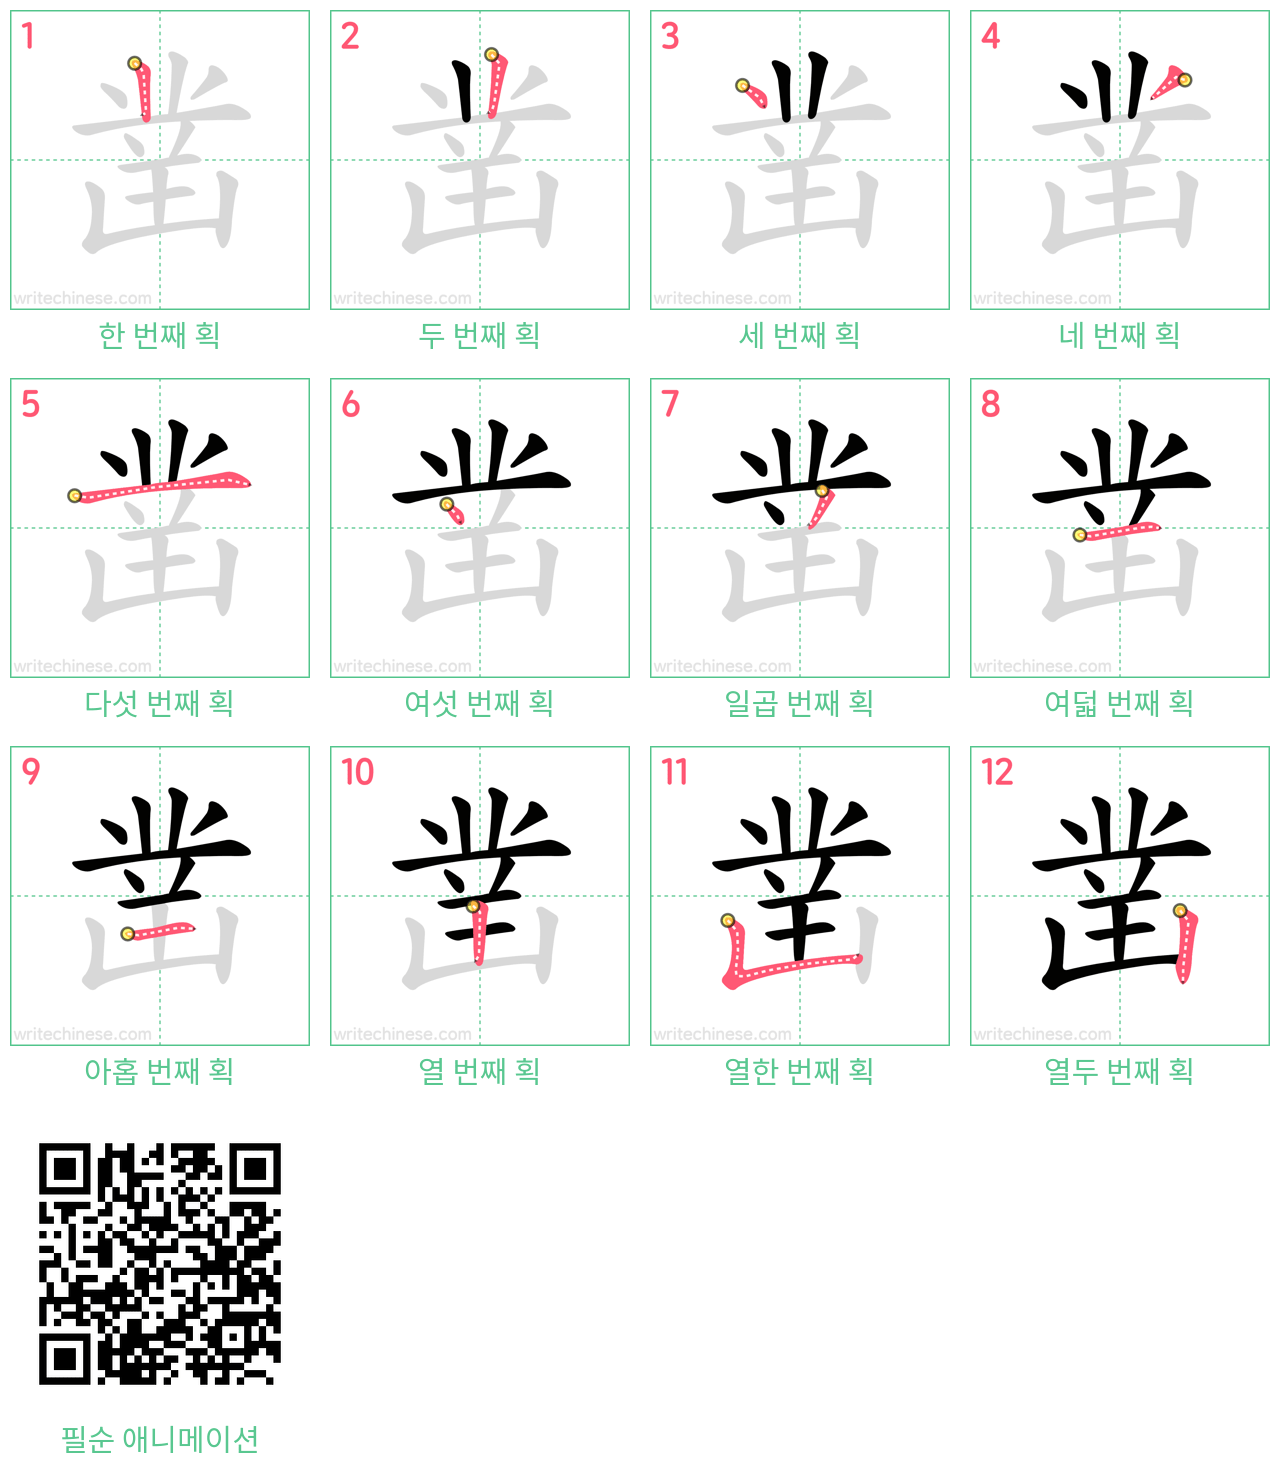 凿 step-by-step stroke order diagrams